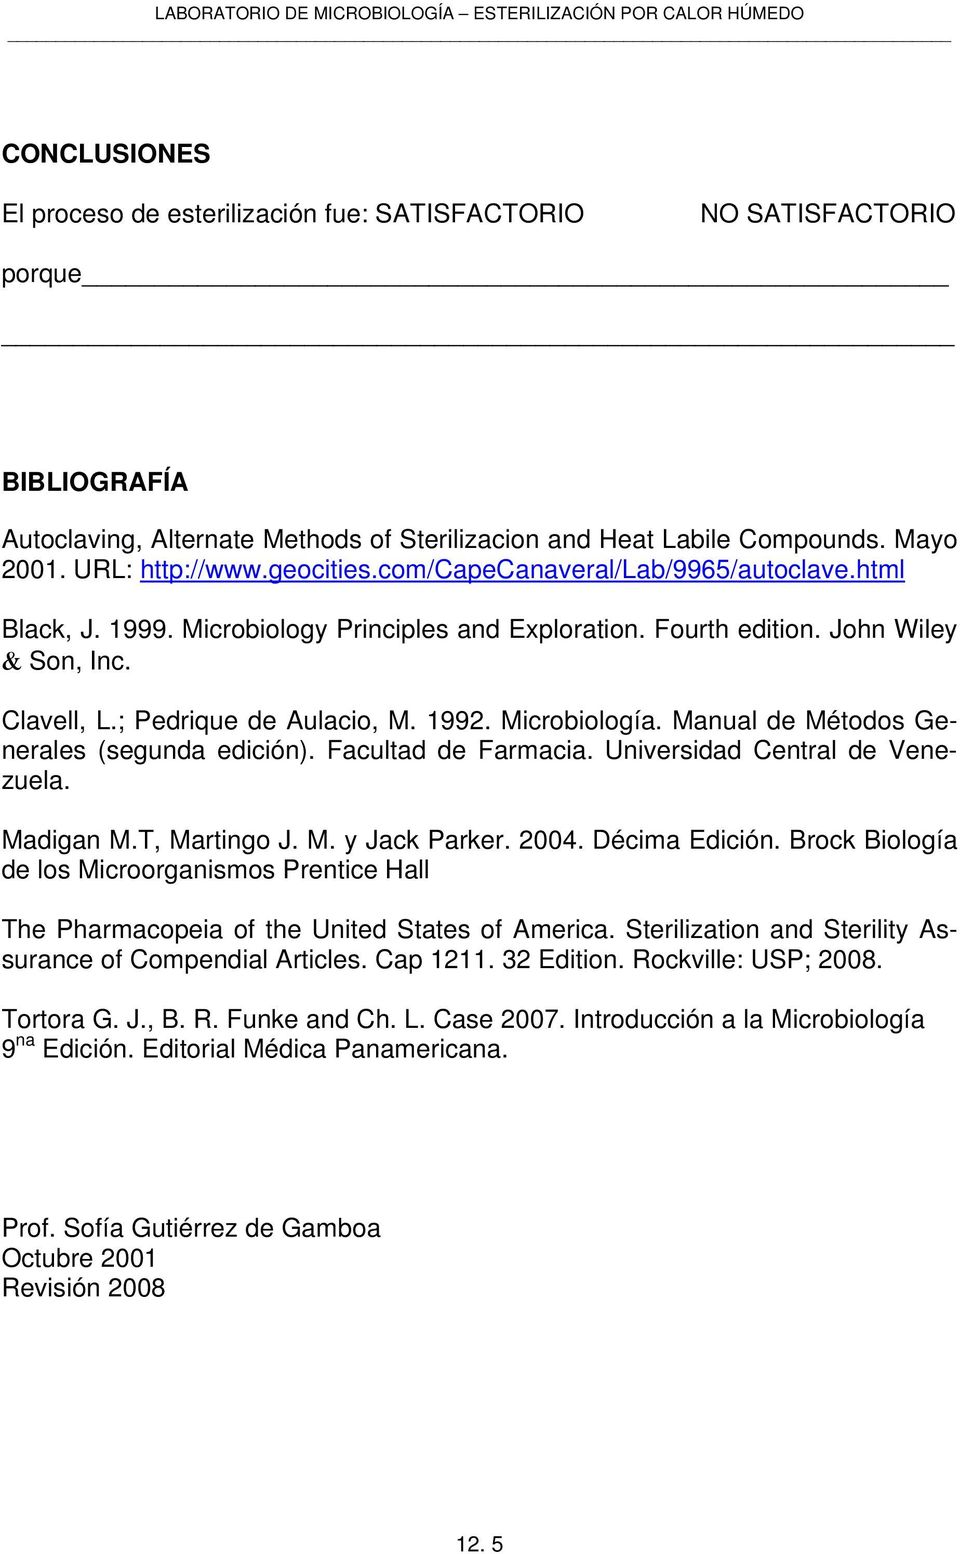 Microbiología. Manual de Métodos Generales (segunda edición). Facultad de Farmacia. Universidad Central de Venezuela. Madigan M.T, Martingo J. M. y Jack Parker. 2004. Décima Edición.